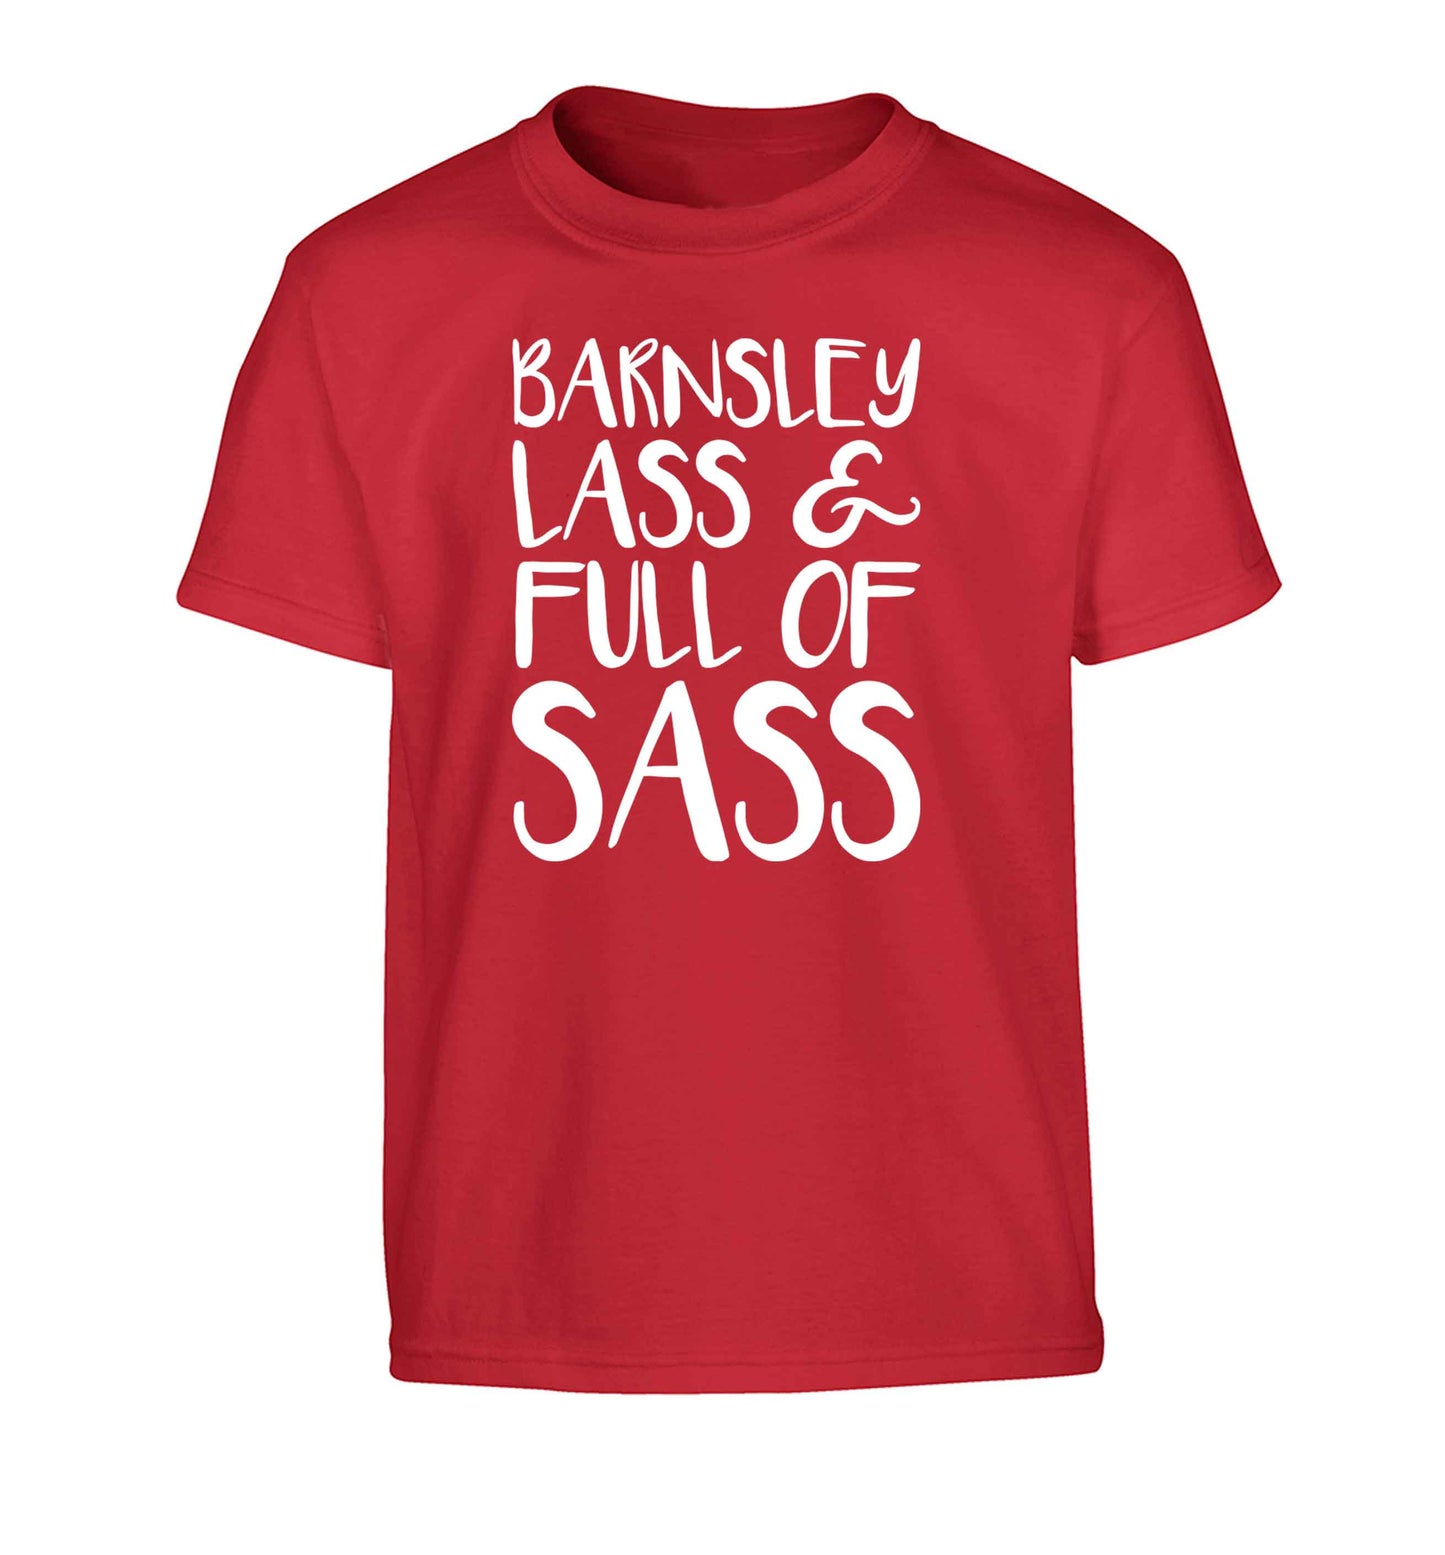 Barnsley lass and full of sass Children's red Tshirt 12-13 Years